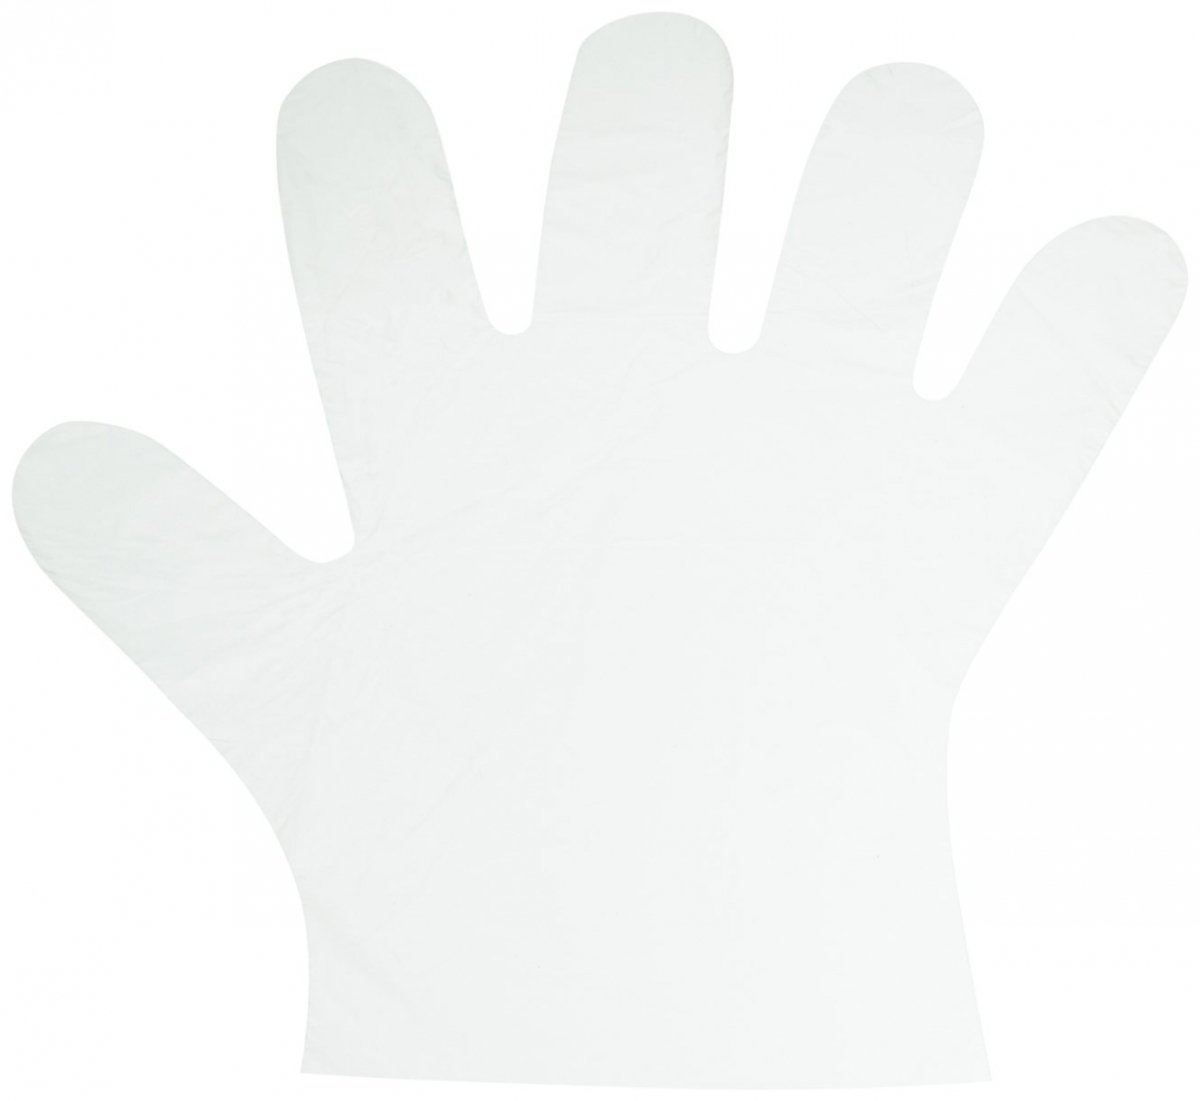 Foliowe rękawiczki jednorazowe HDPE 10μm grube - 10000 sztuk